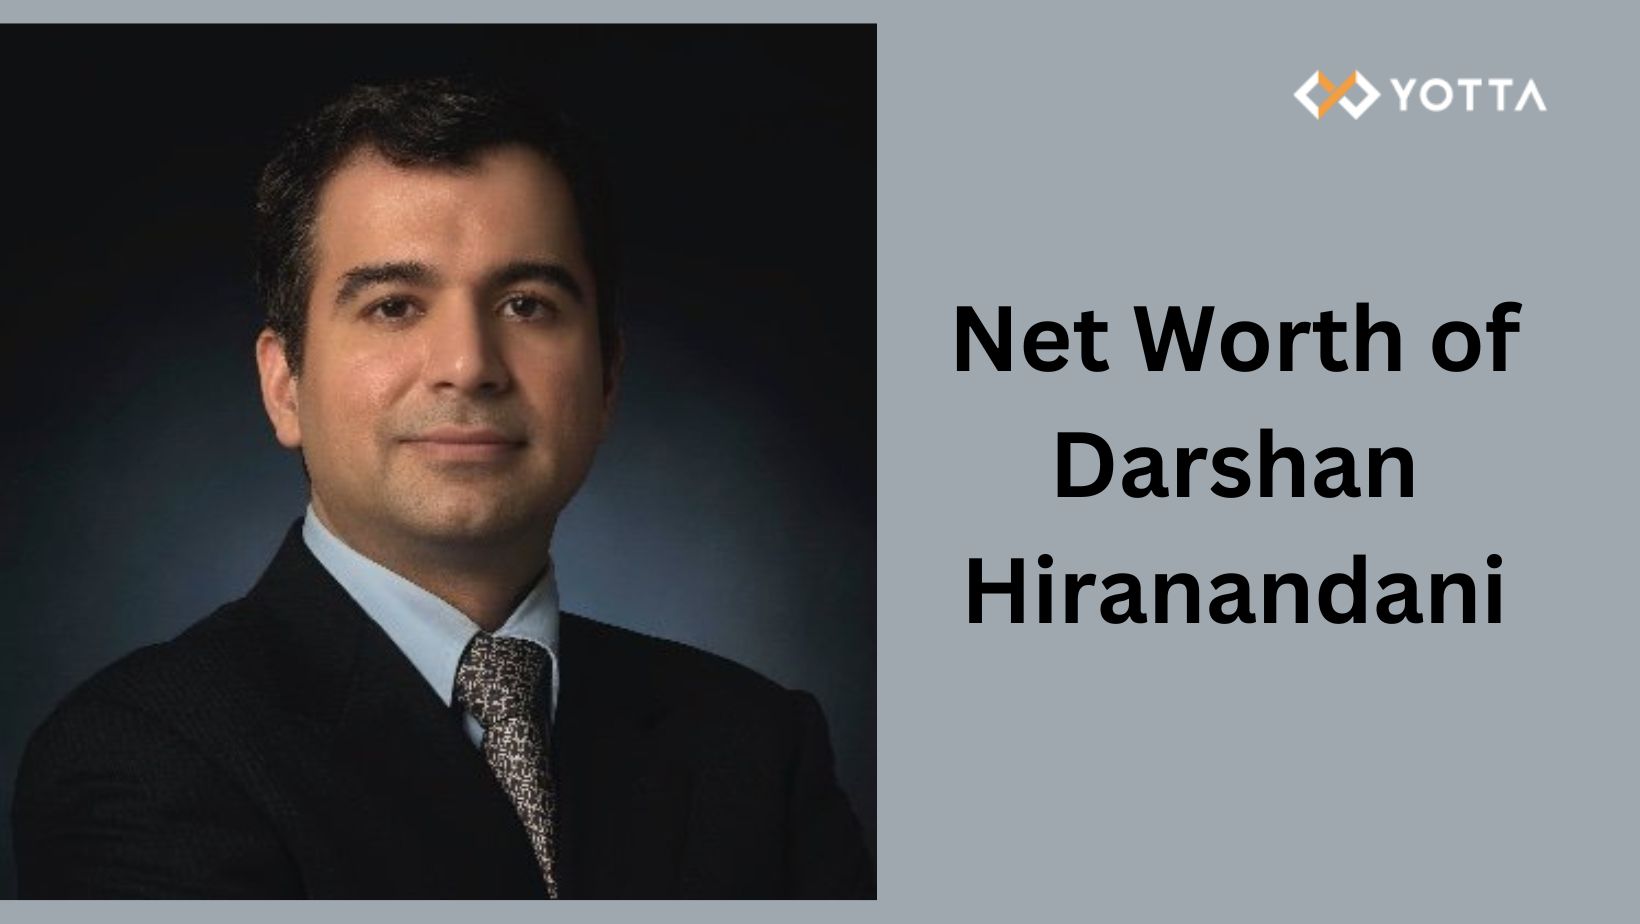 Net Worth of Darshan Hiranandani – Shashank Mehta